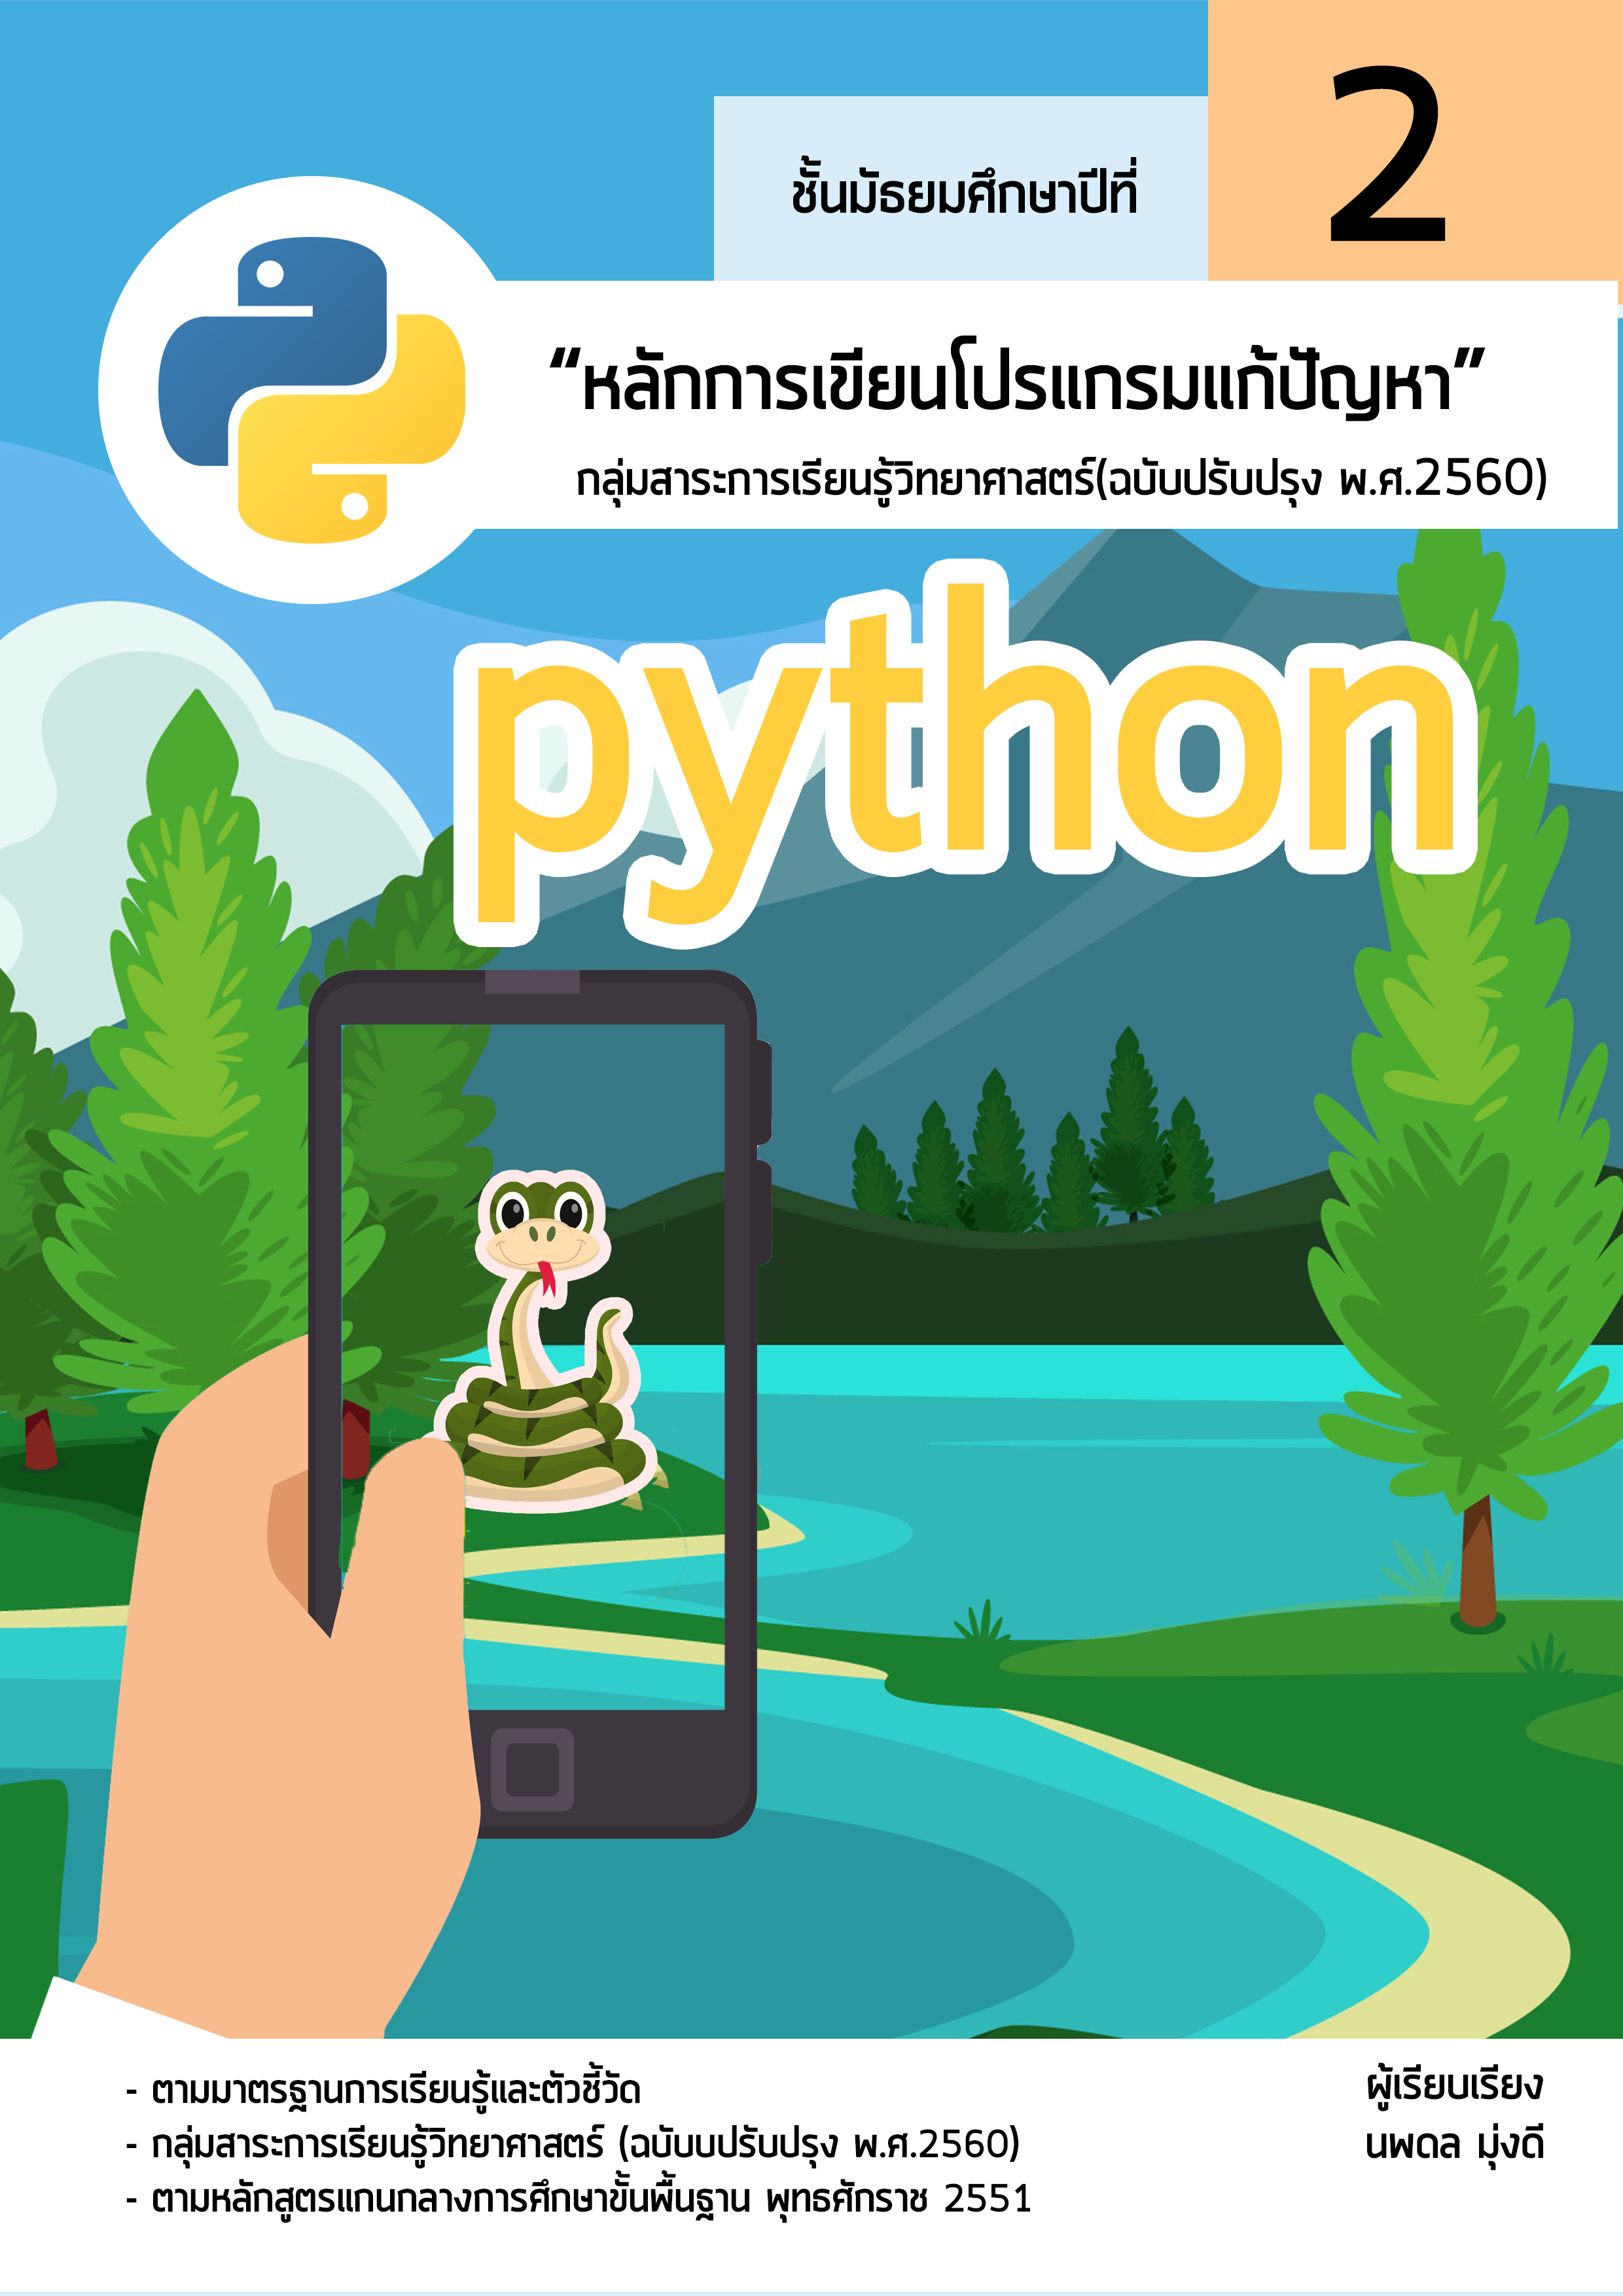 การเขียนโปรแกรมแก้ปัญหาด้วยภาษา Python